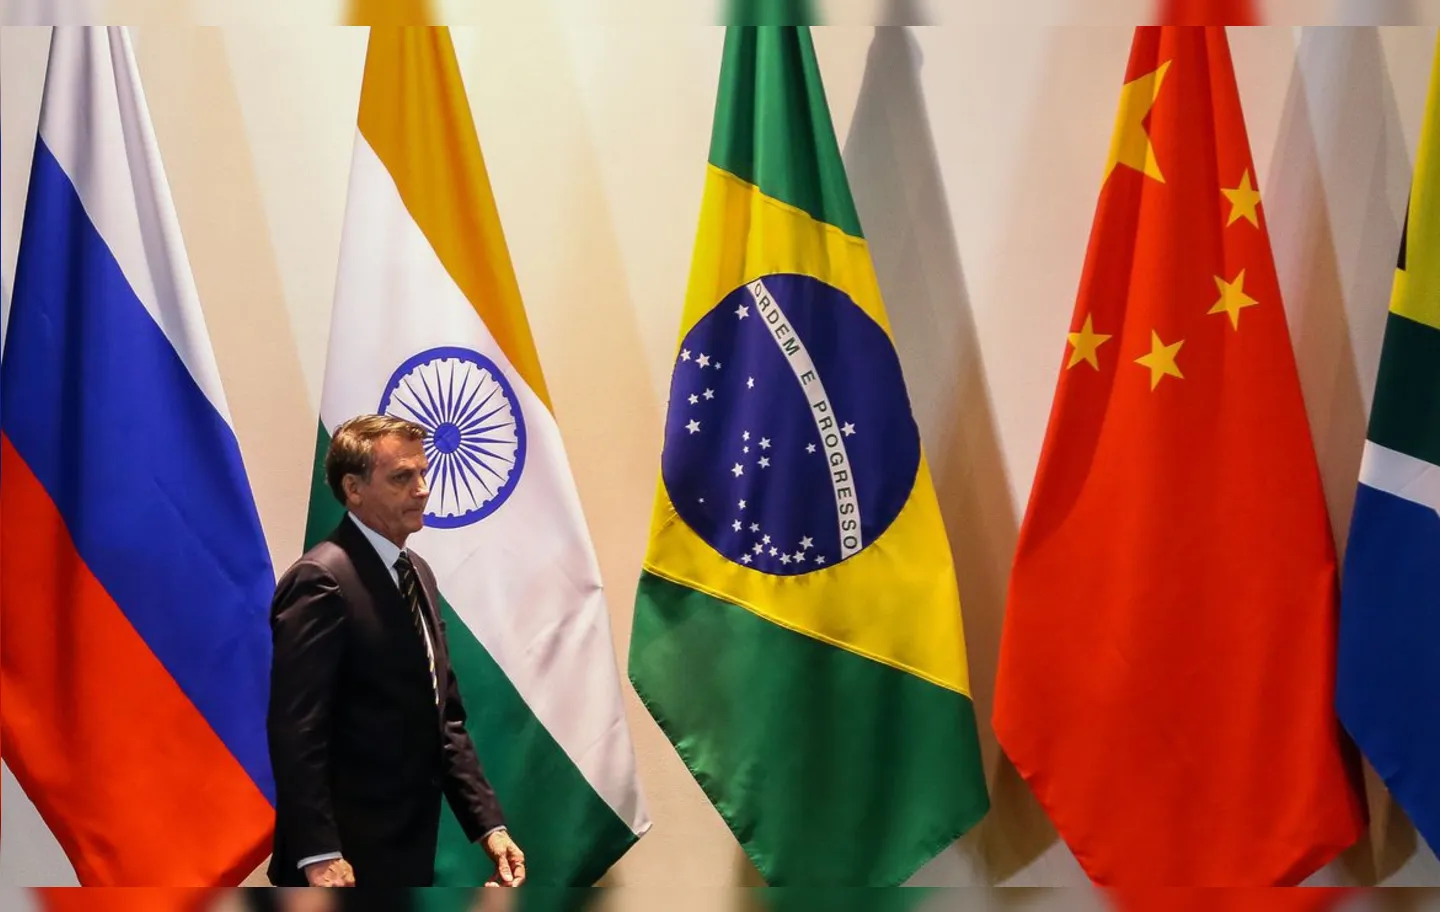 Evento online ocorre a partir da Índia, que preside o bloco em 2021 | Foto: Valter Campanato | Agência Brasil